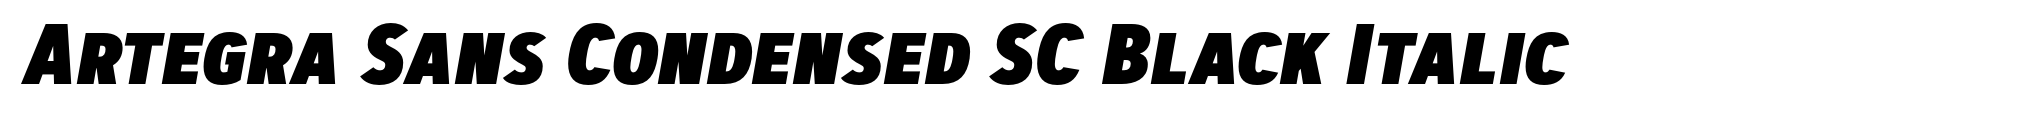 Artegra Sans Condensed SC Black Italic image